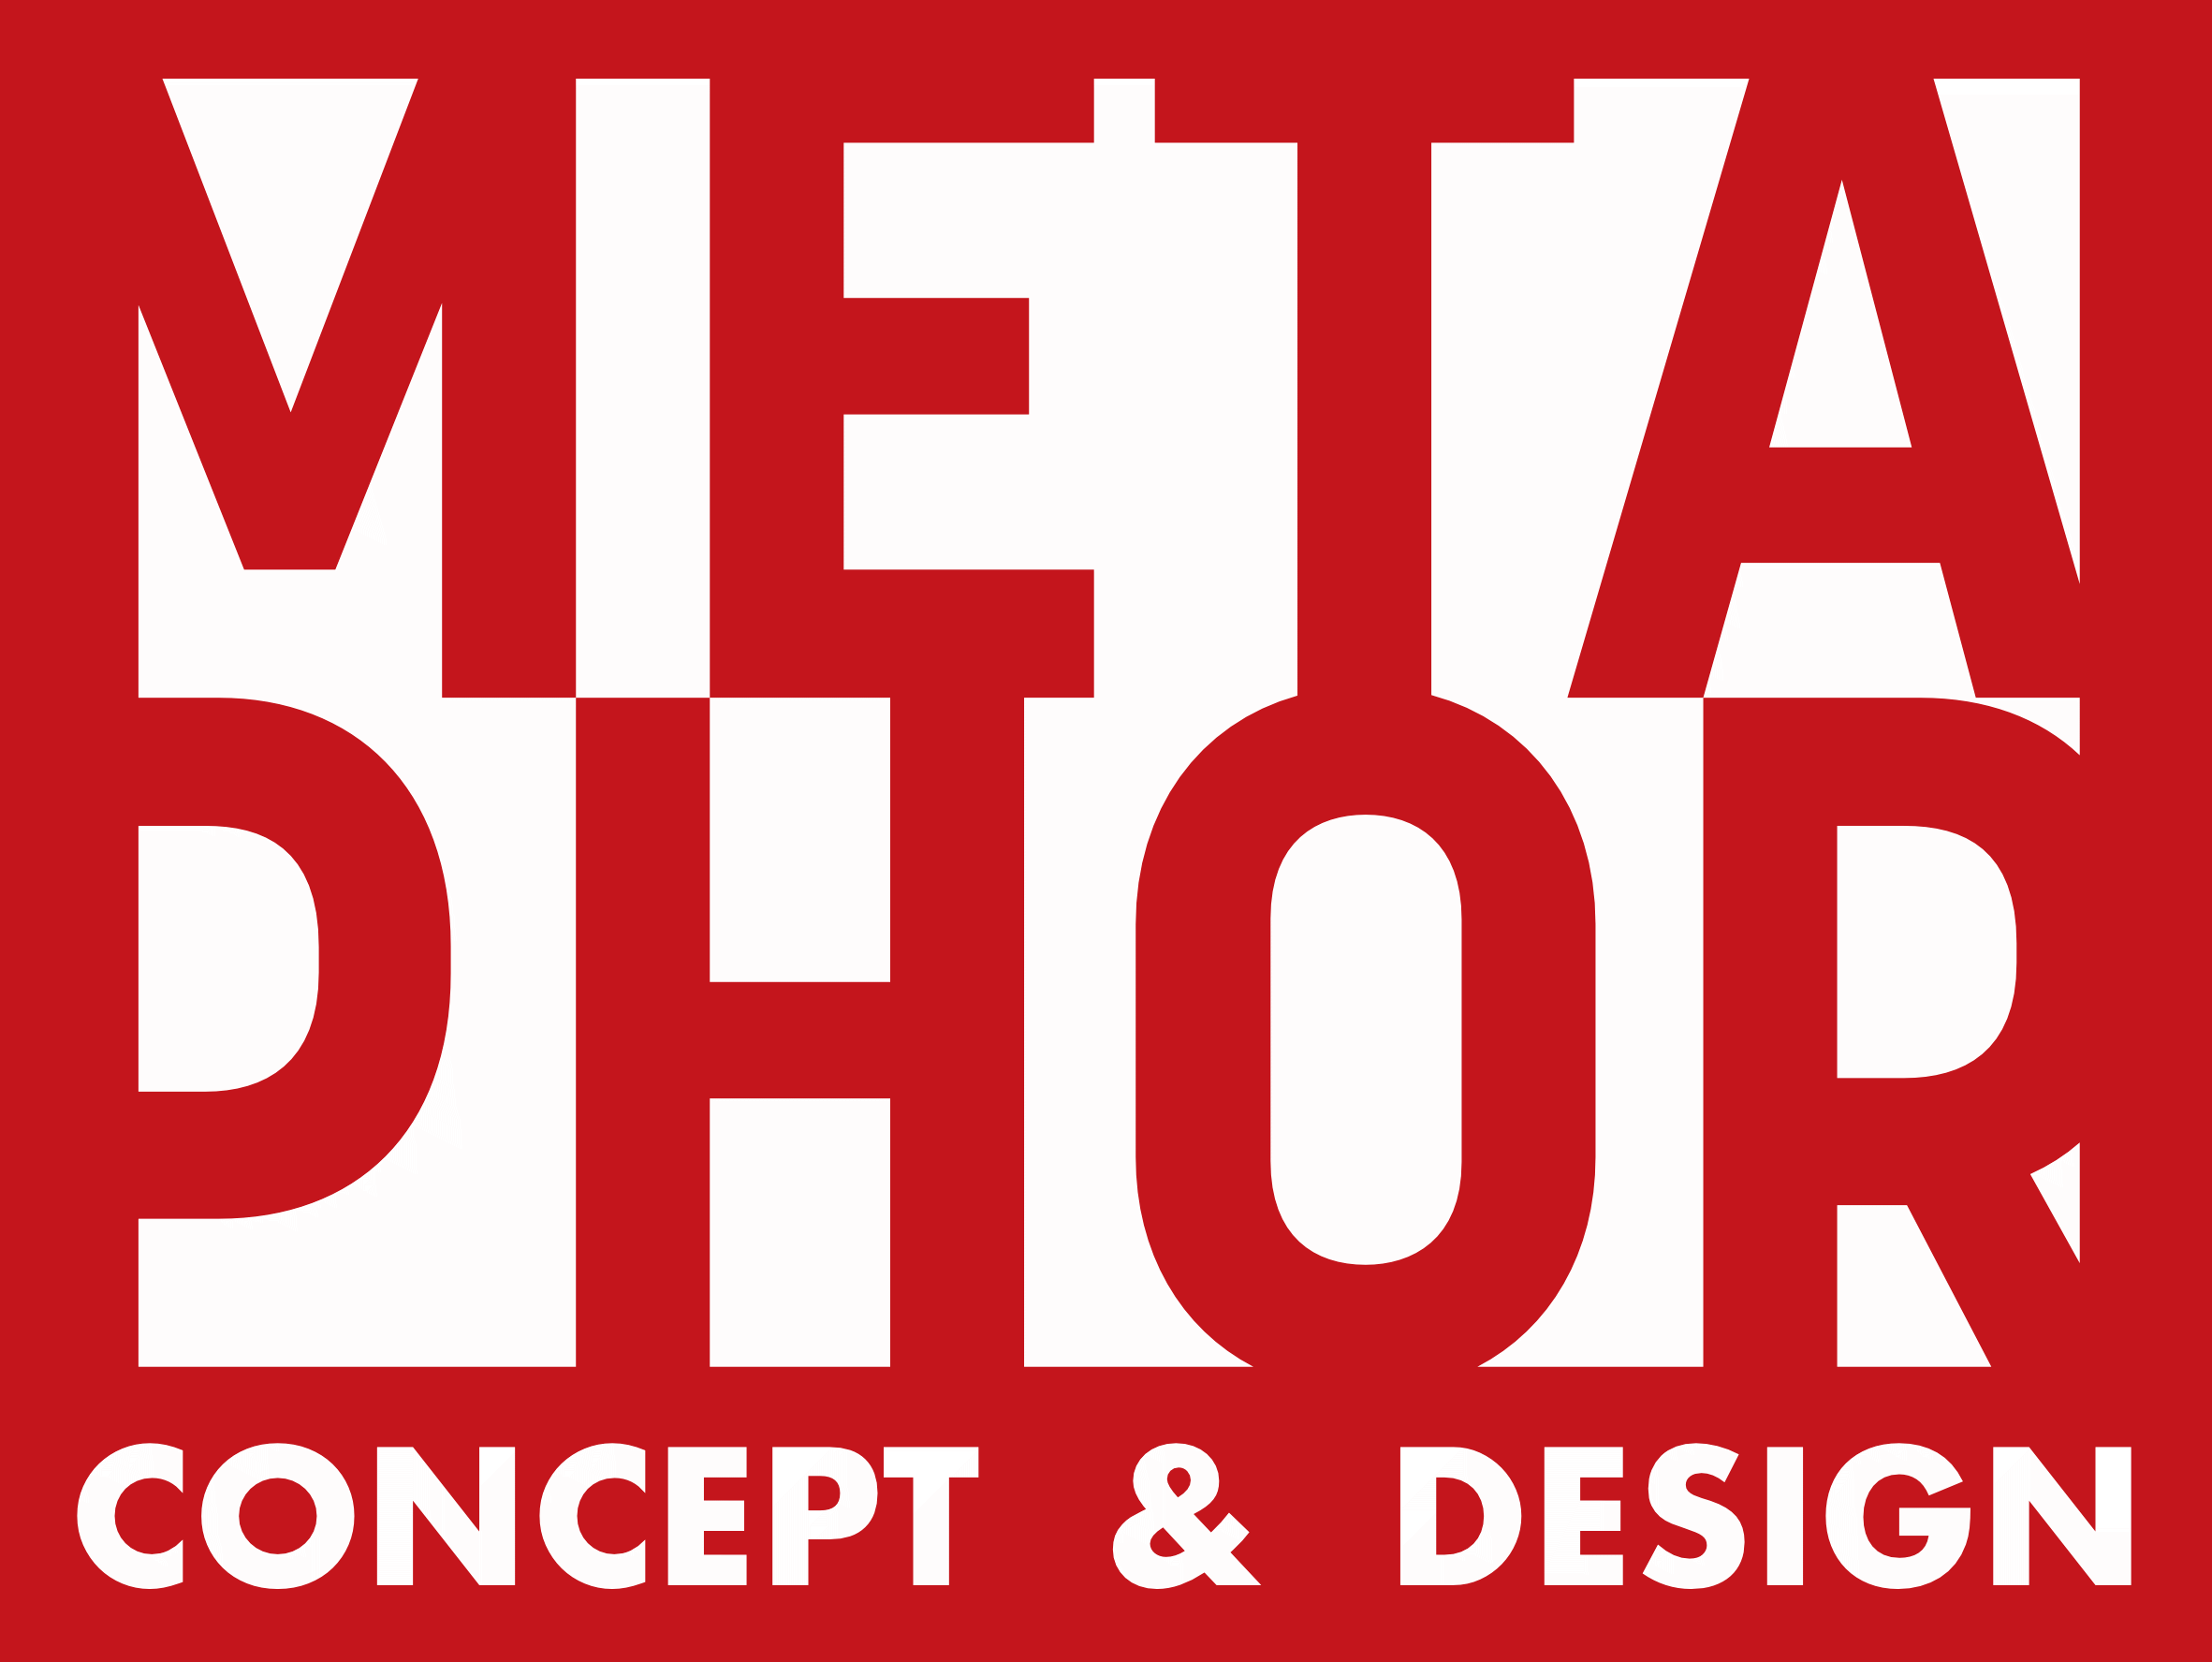 Metaphor Concepts